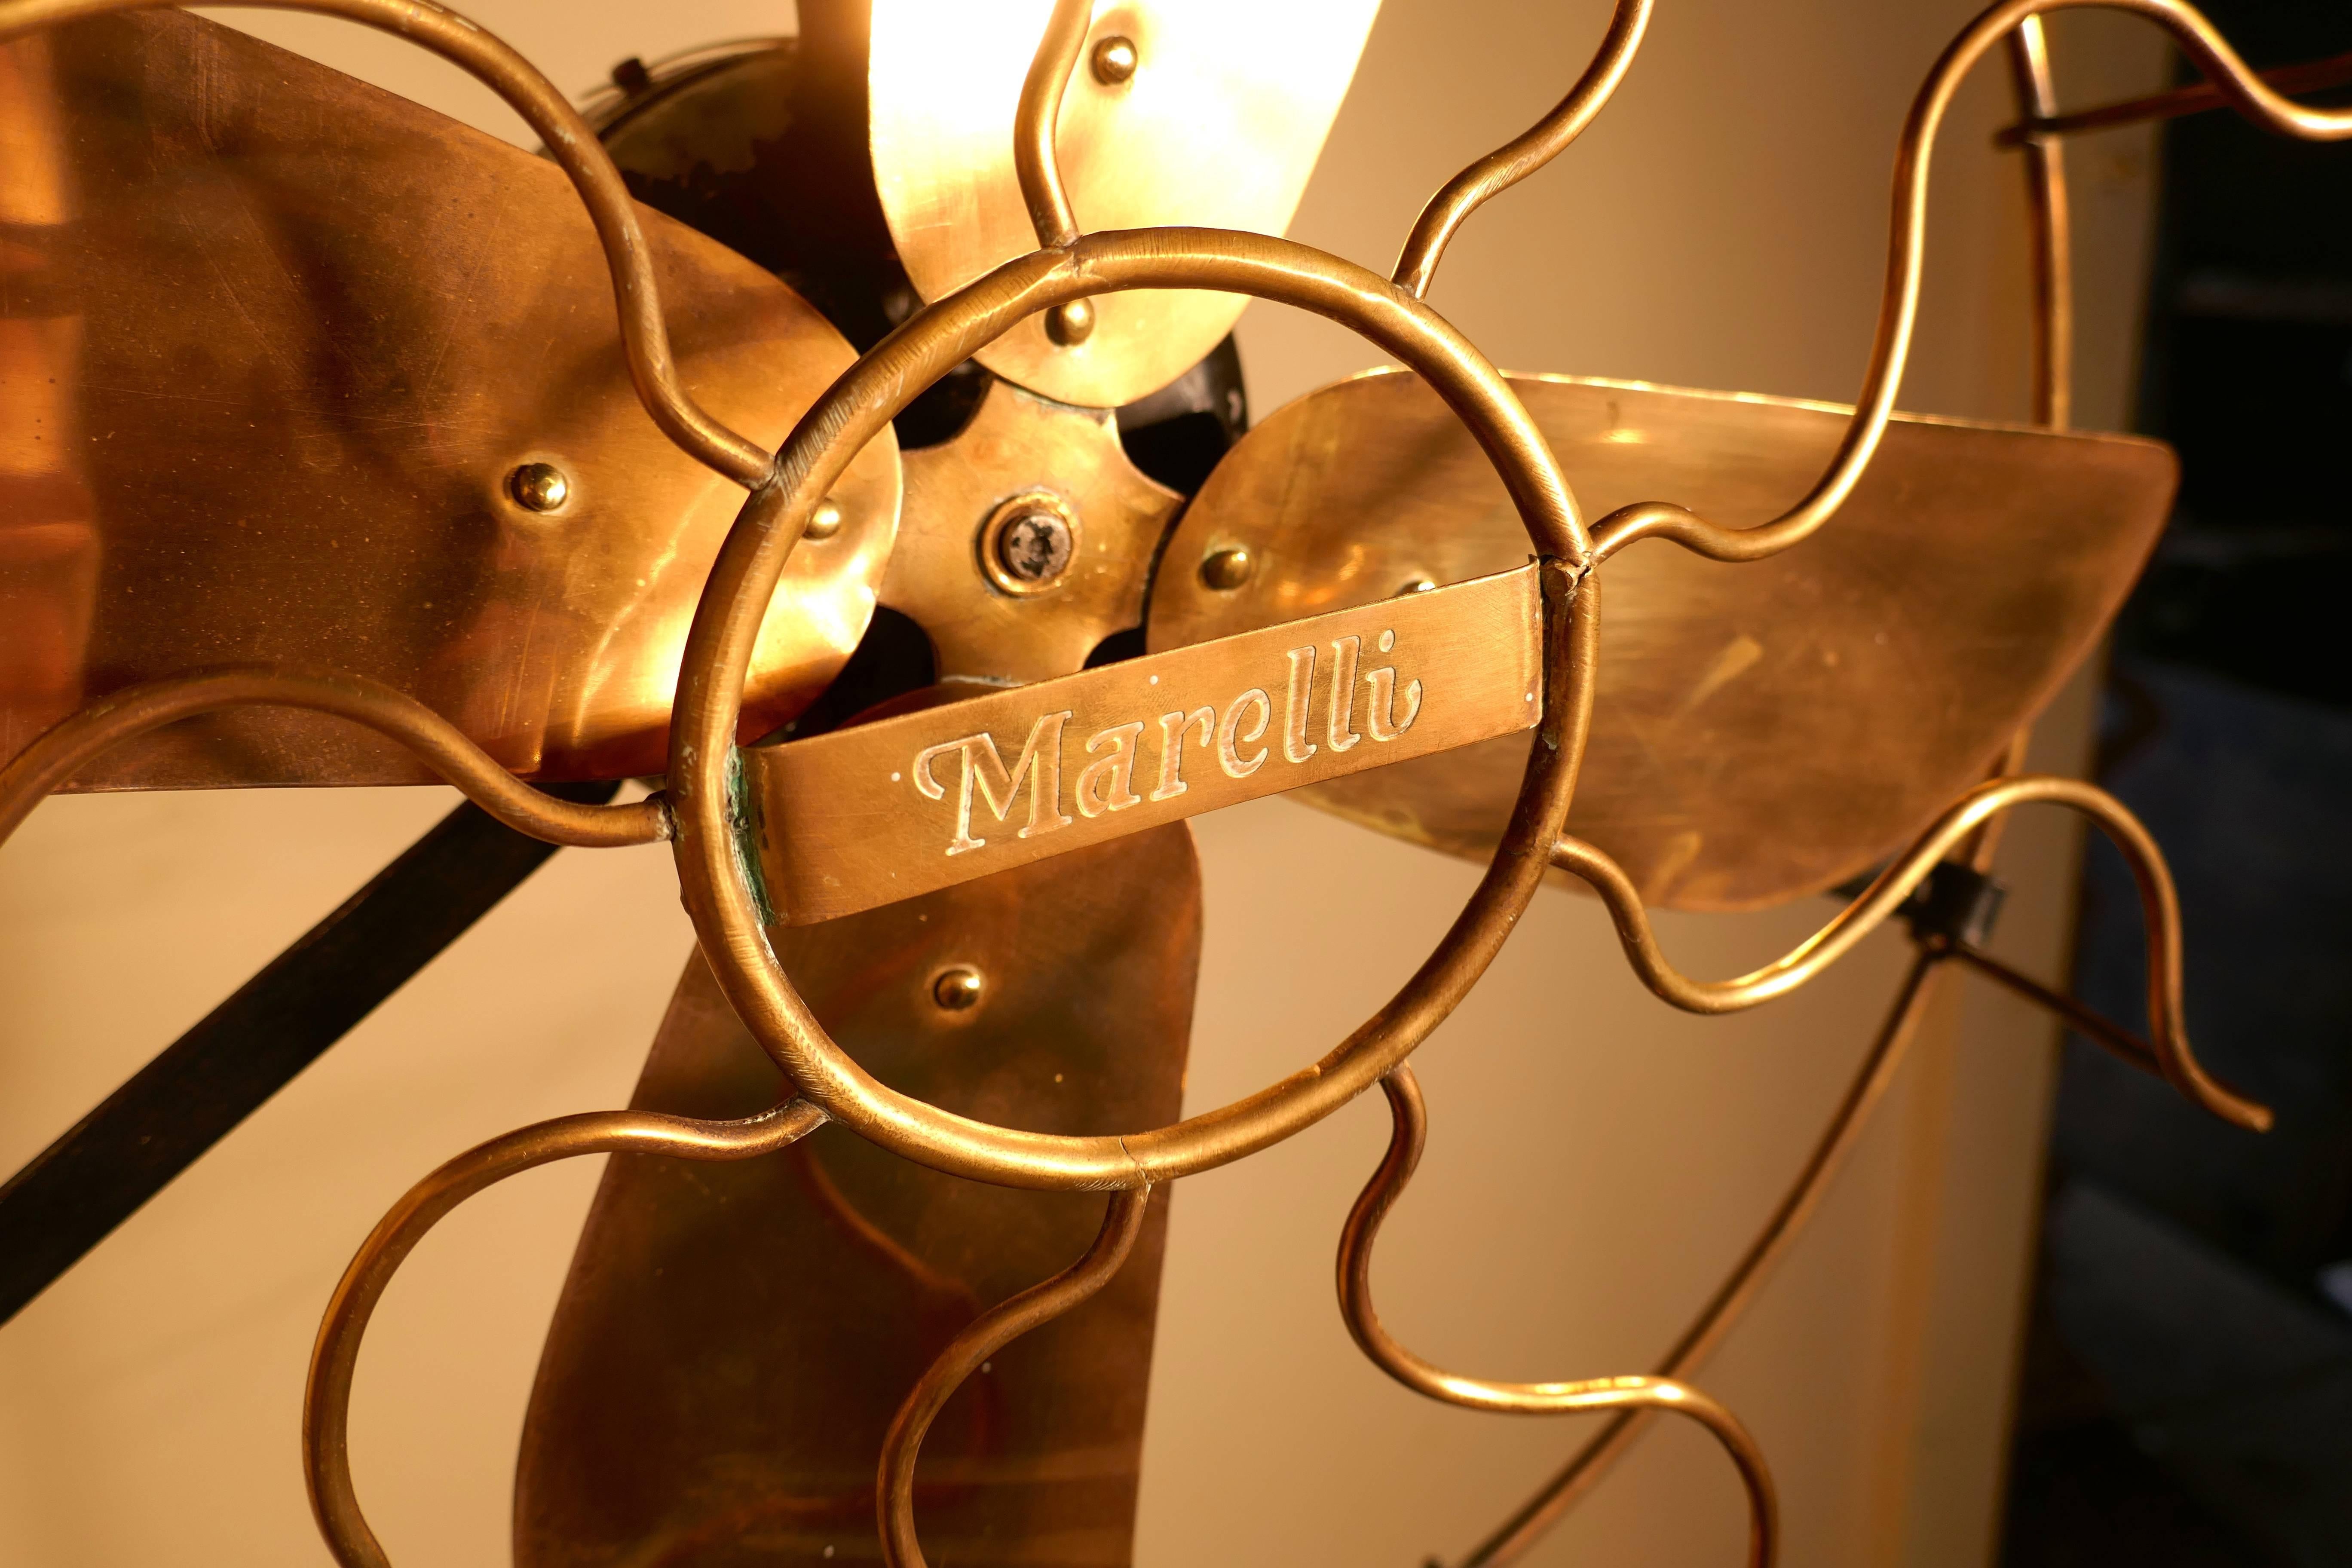 Brass Electric Telescopic Pedestal Fan by Mirelli, Industrial Antique 1